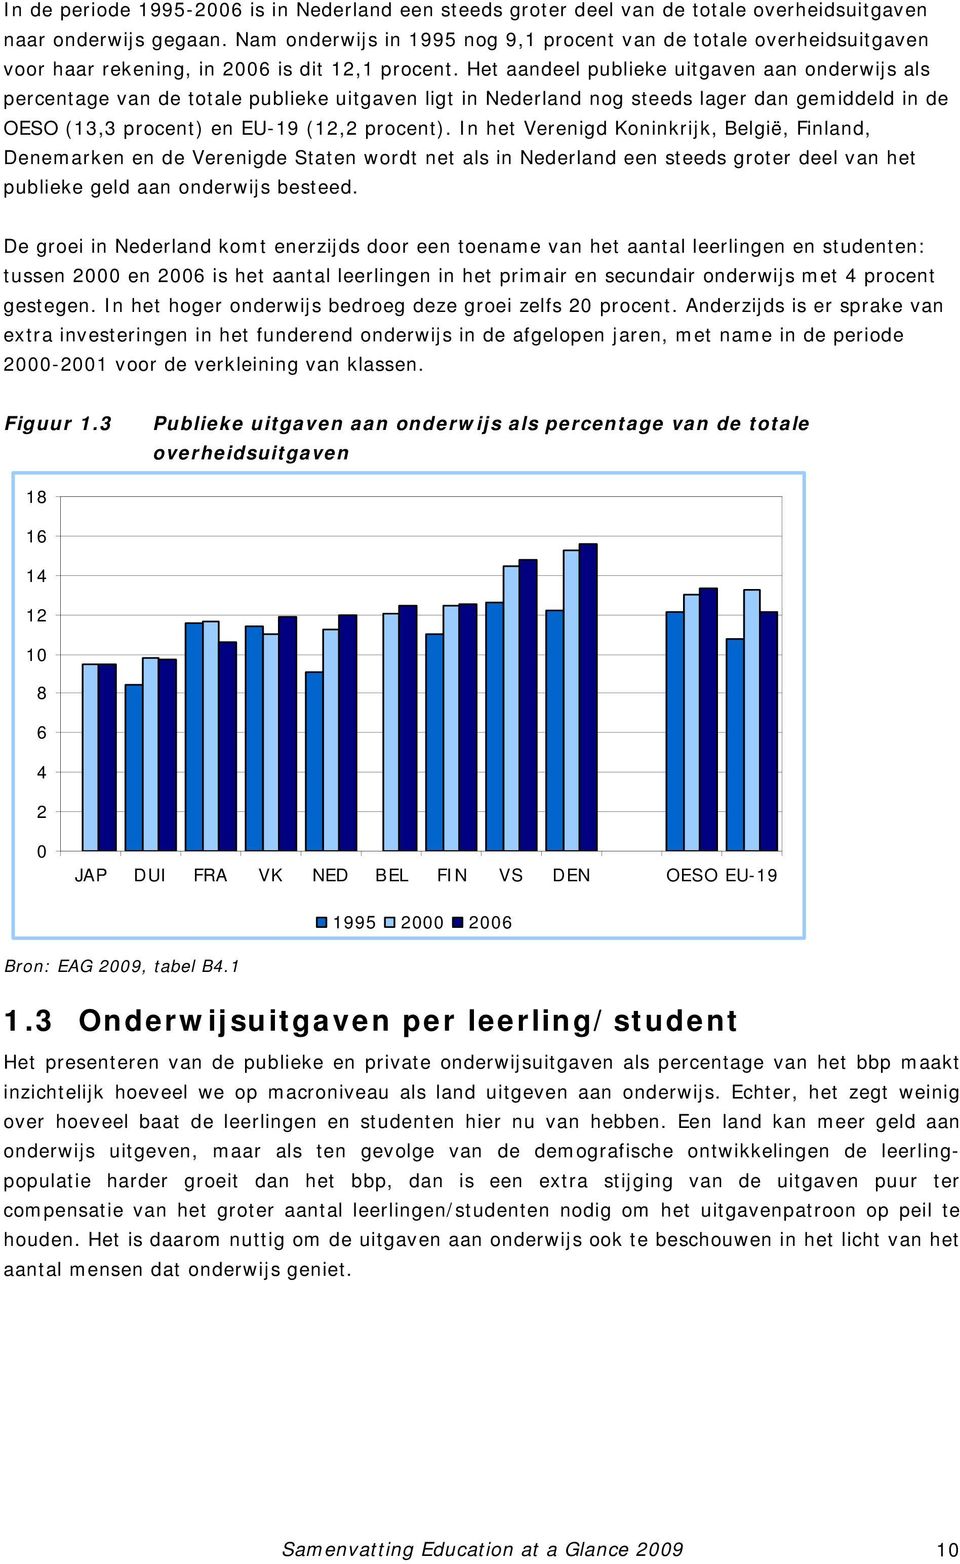 Het aandeel publieke uitgaven aan onderwijs als percentage van de totale publieke uitgaven ligt in Nederland nog steeds lager dan gemiddeld in de OESO (13,3 procent) en EU-19 (12,2 procent).